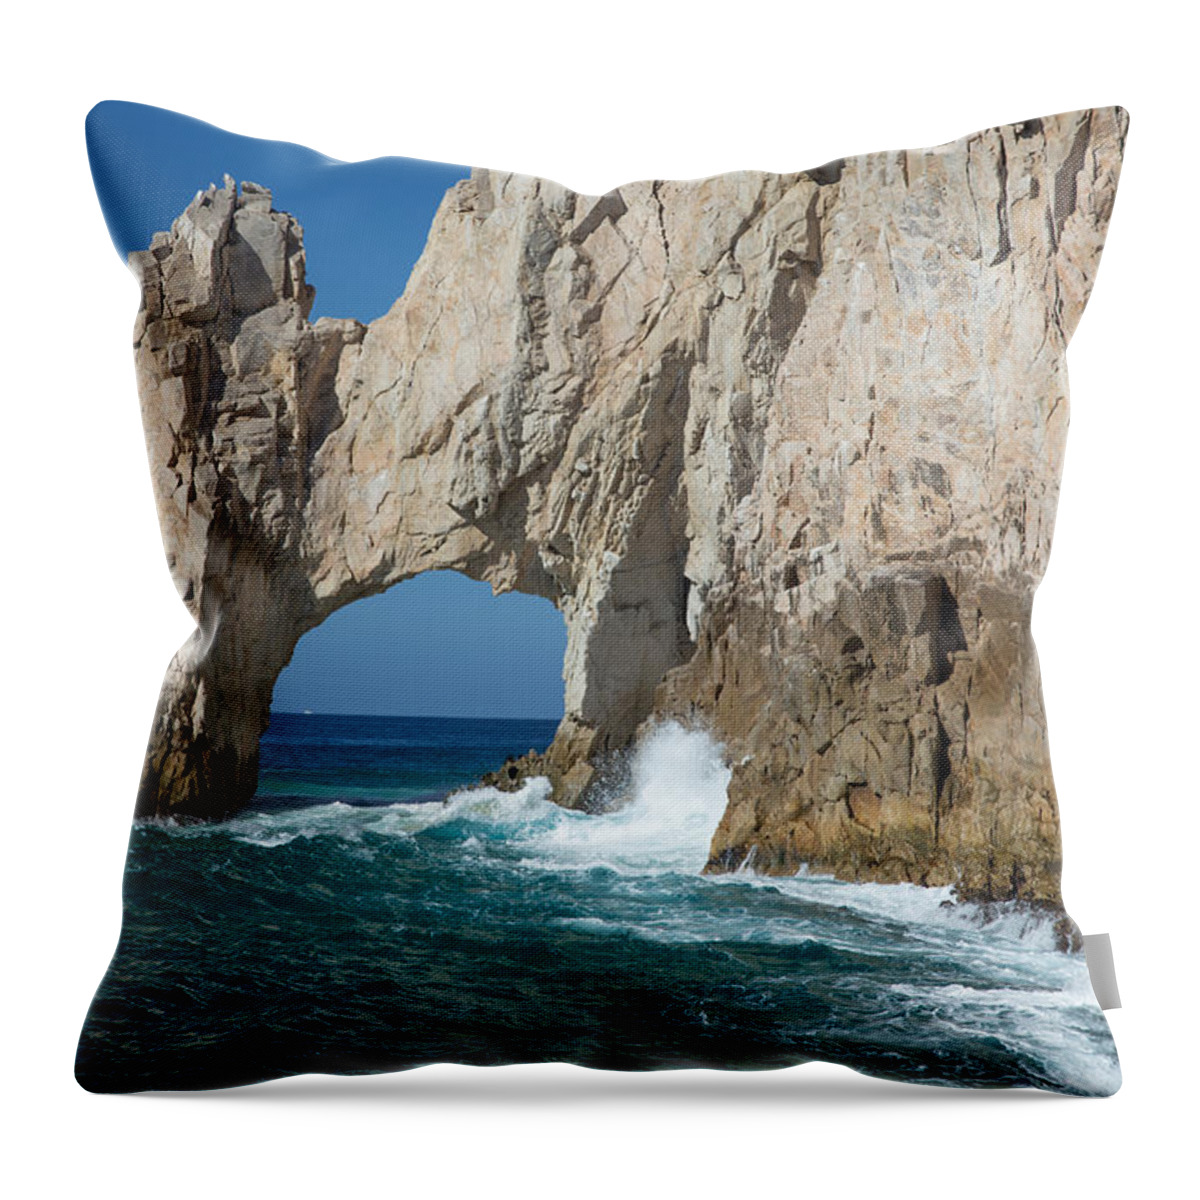 Sea Arch Throw Pillow featuring the photograph Sea arch El Arco de Cabo San Lucas by Allan Levin